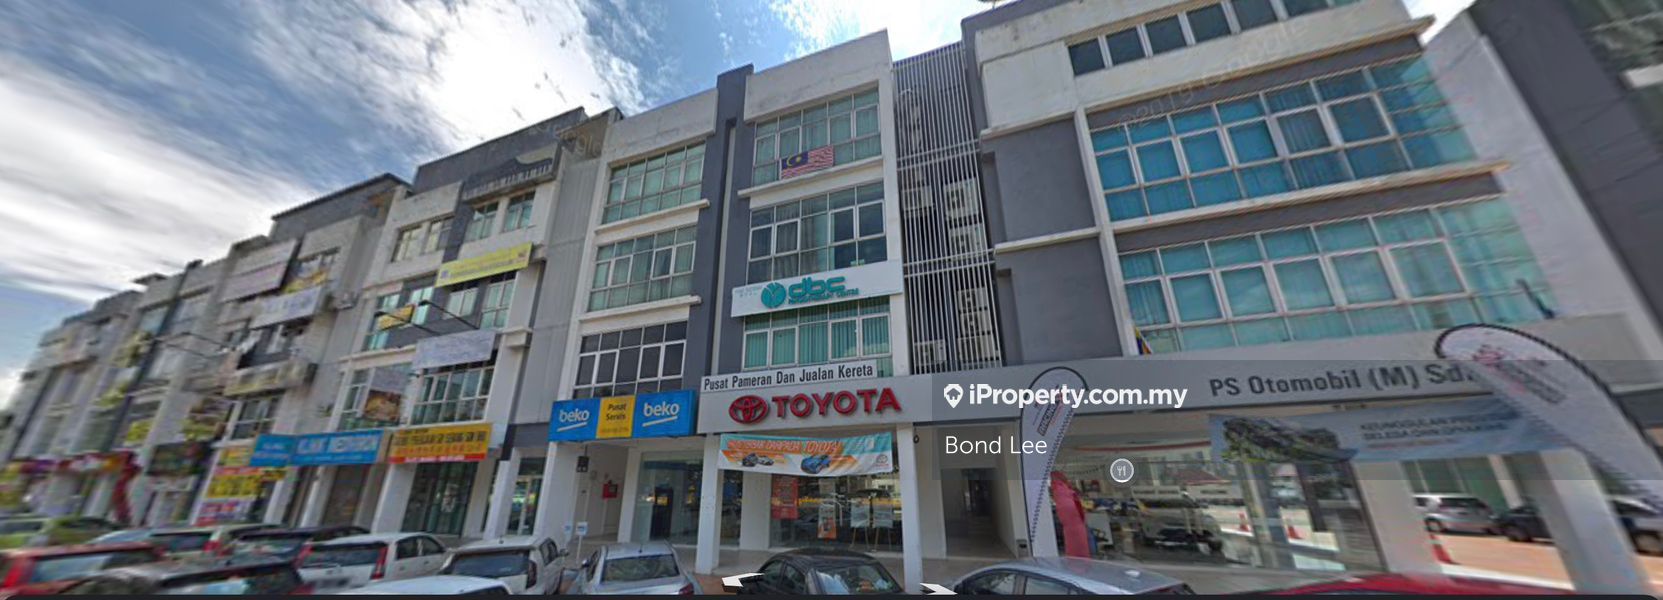 Jalan Kuching Boulevard Business Park Main Road Shop For Rent, Kuching boulevard, Jalan Kuching